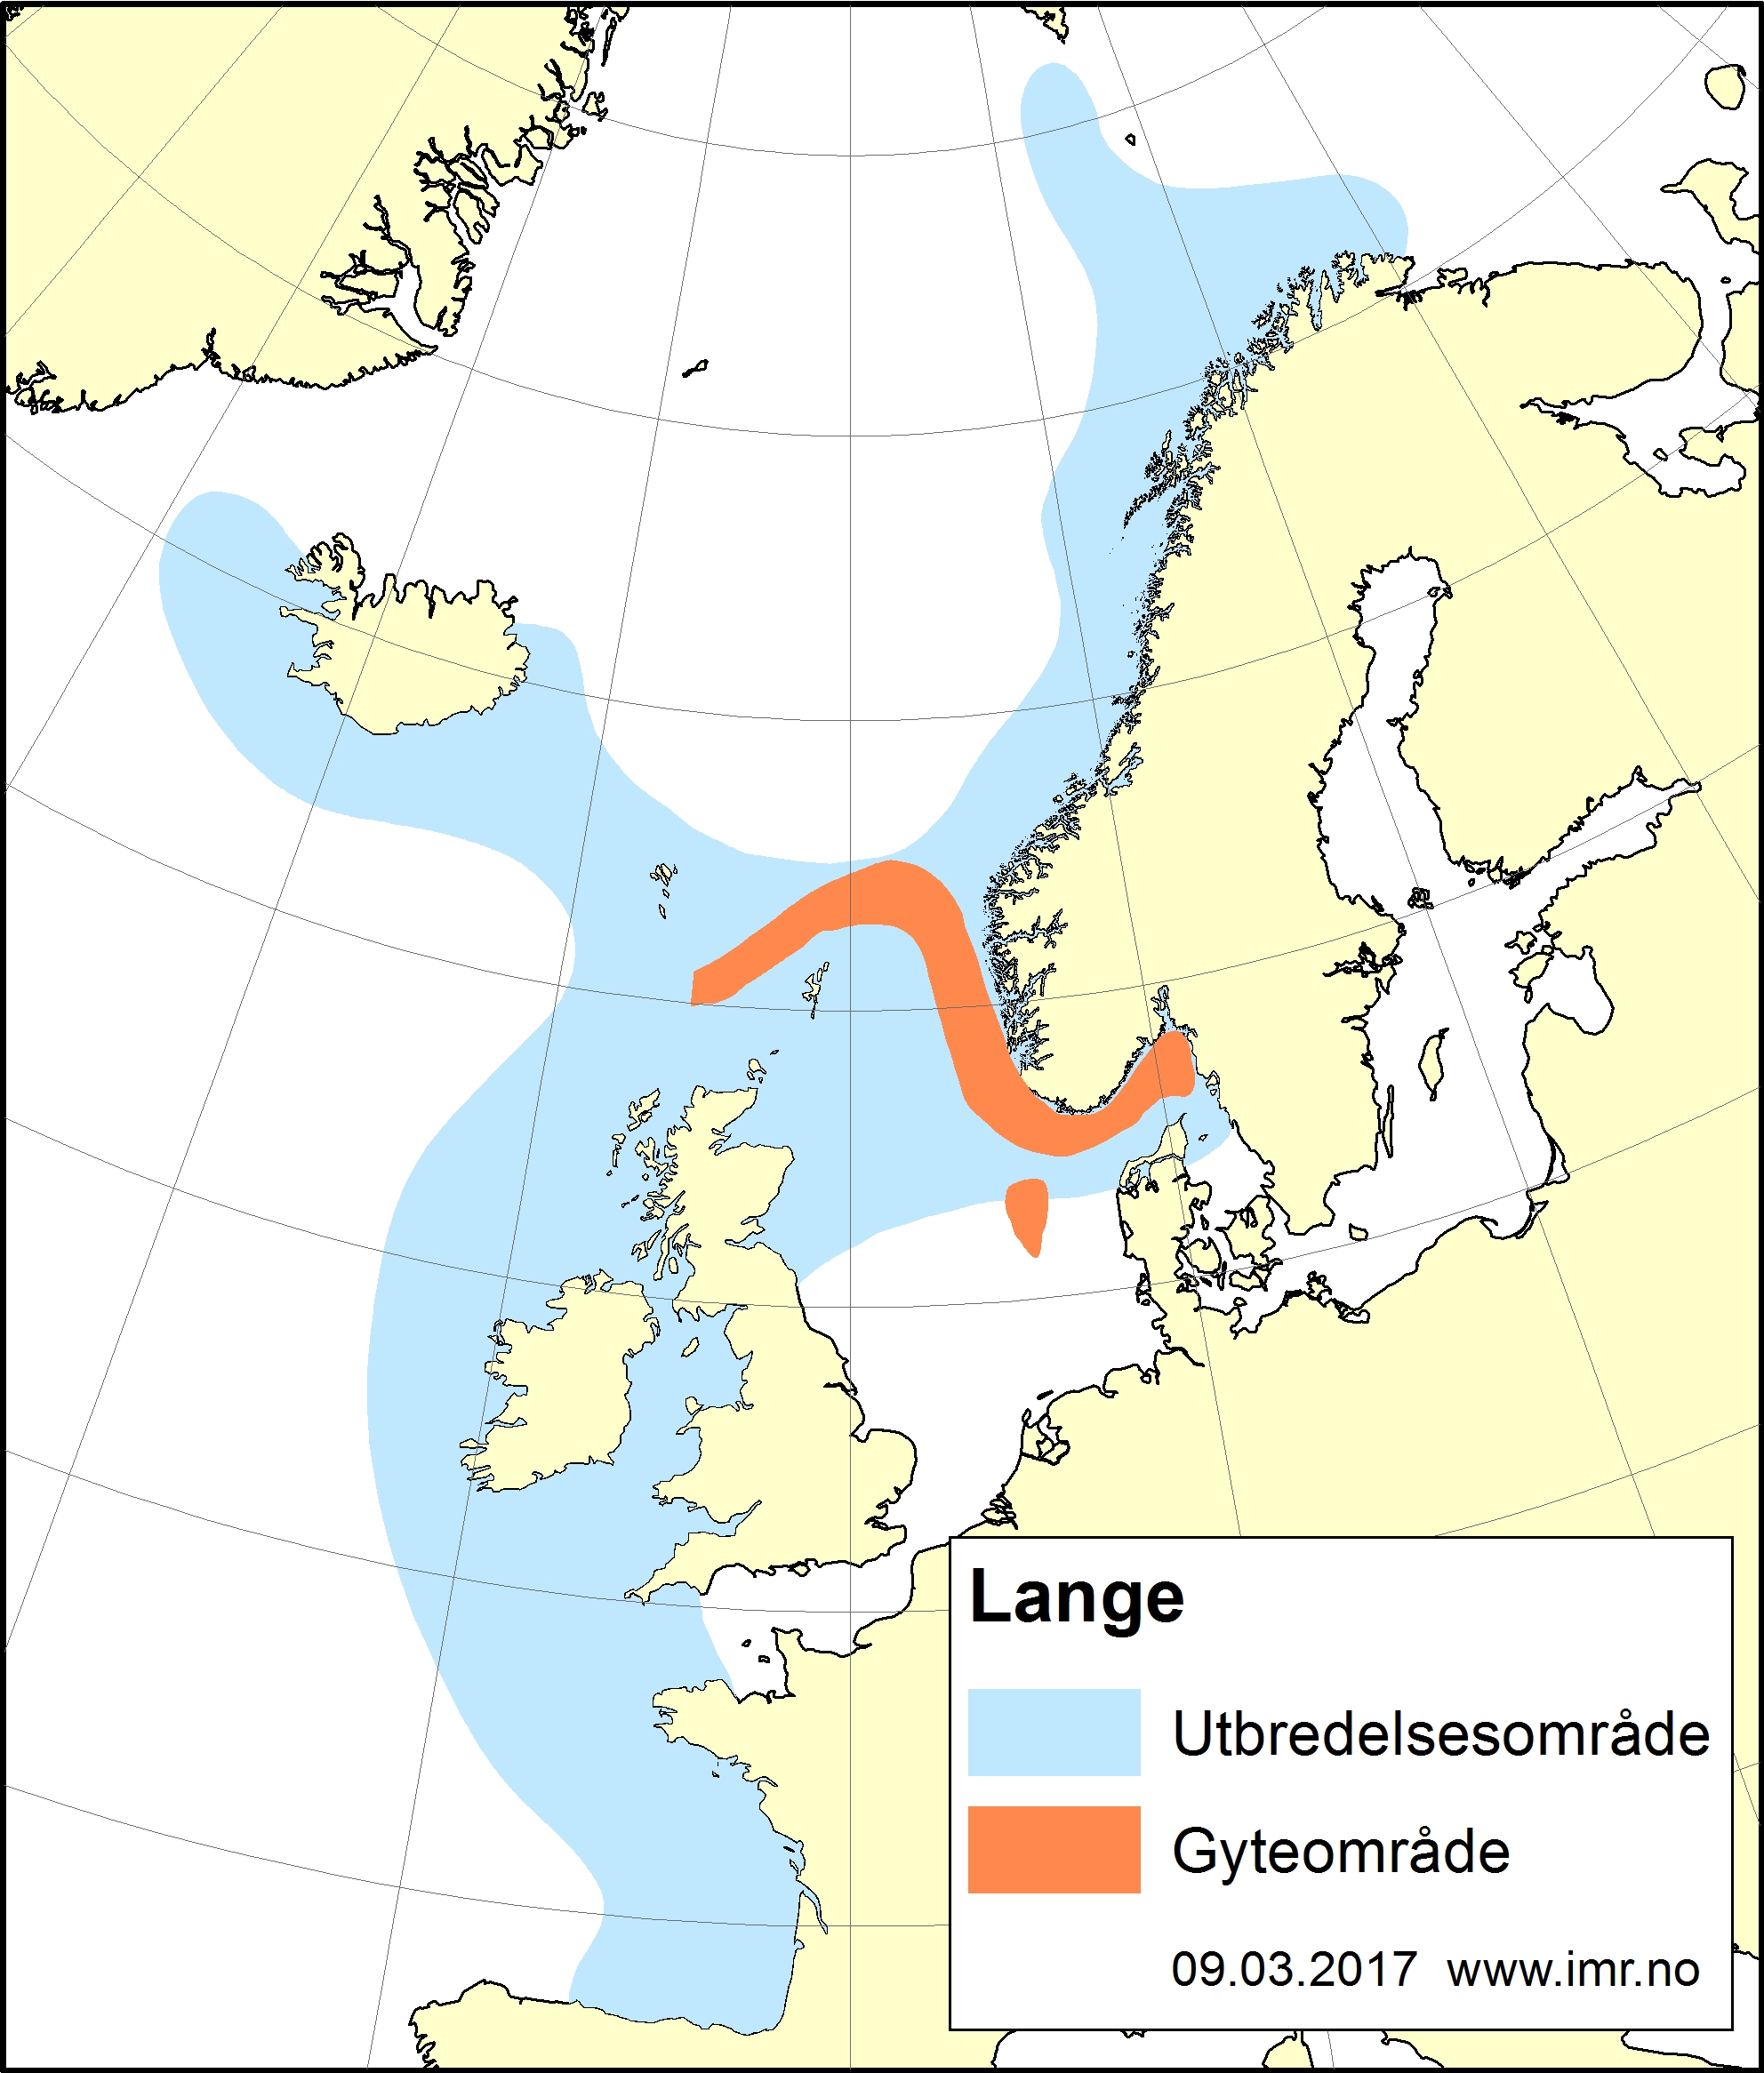 Den har en utbredelse ved helde norskekysten, men gyteområde ved øvre grense til nordsjøen